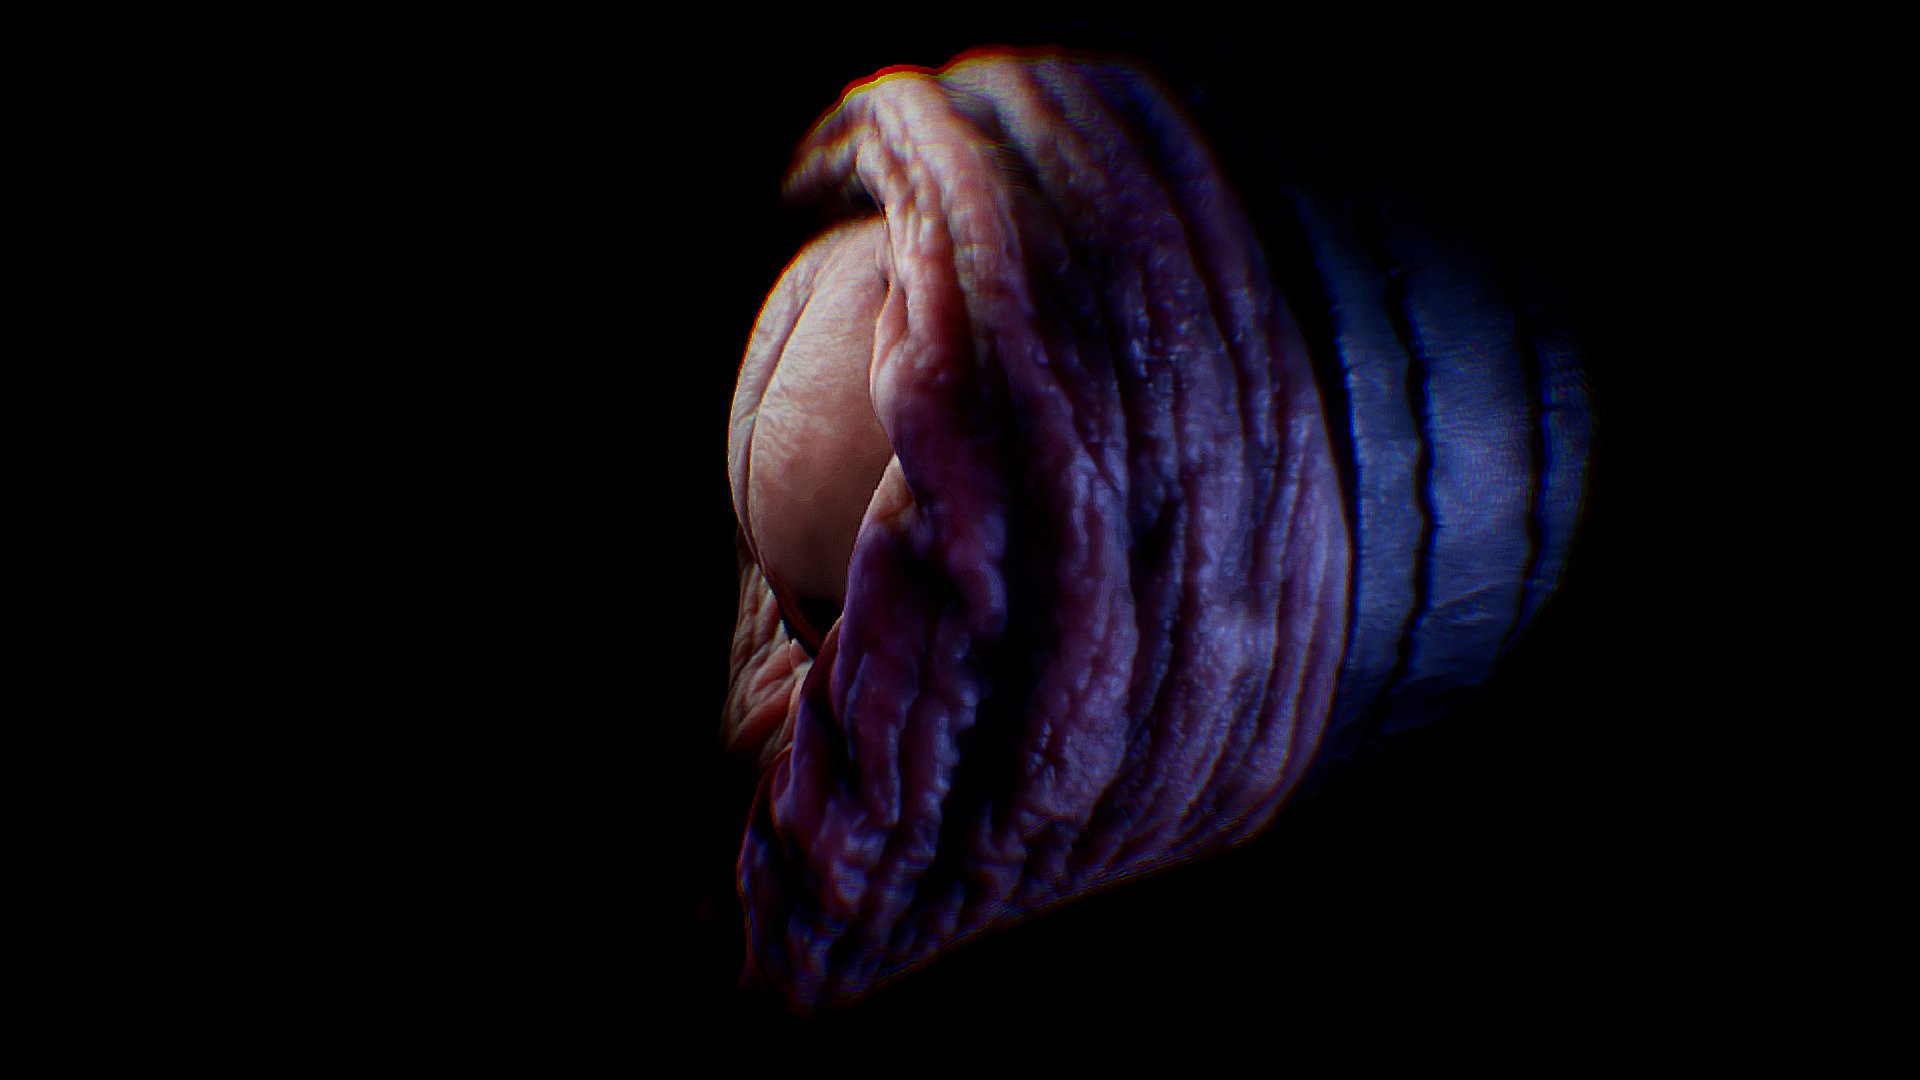 Modelo escaneado del detalle de un prepucio y su glande iluminado de una forma misteriosa observado desde varios puntos de vista 3d model